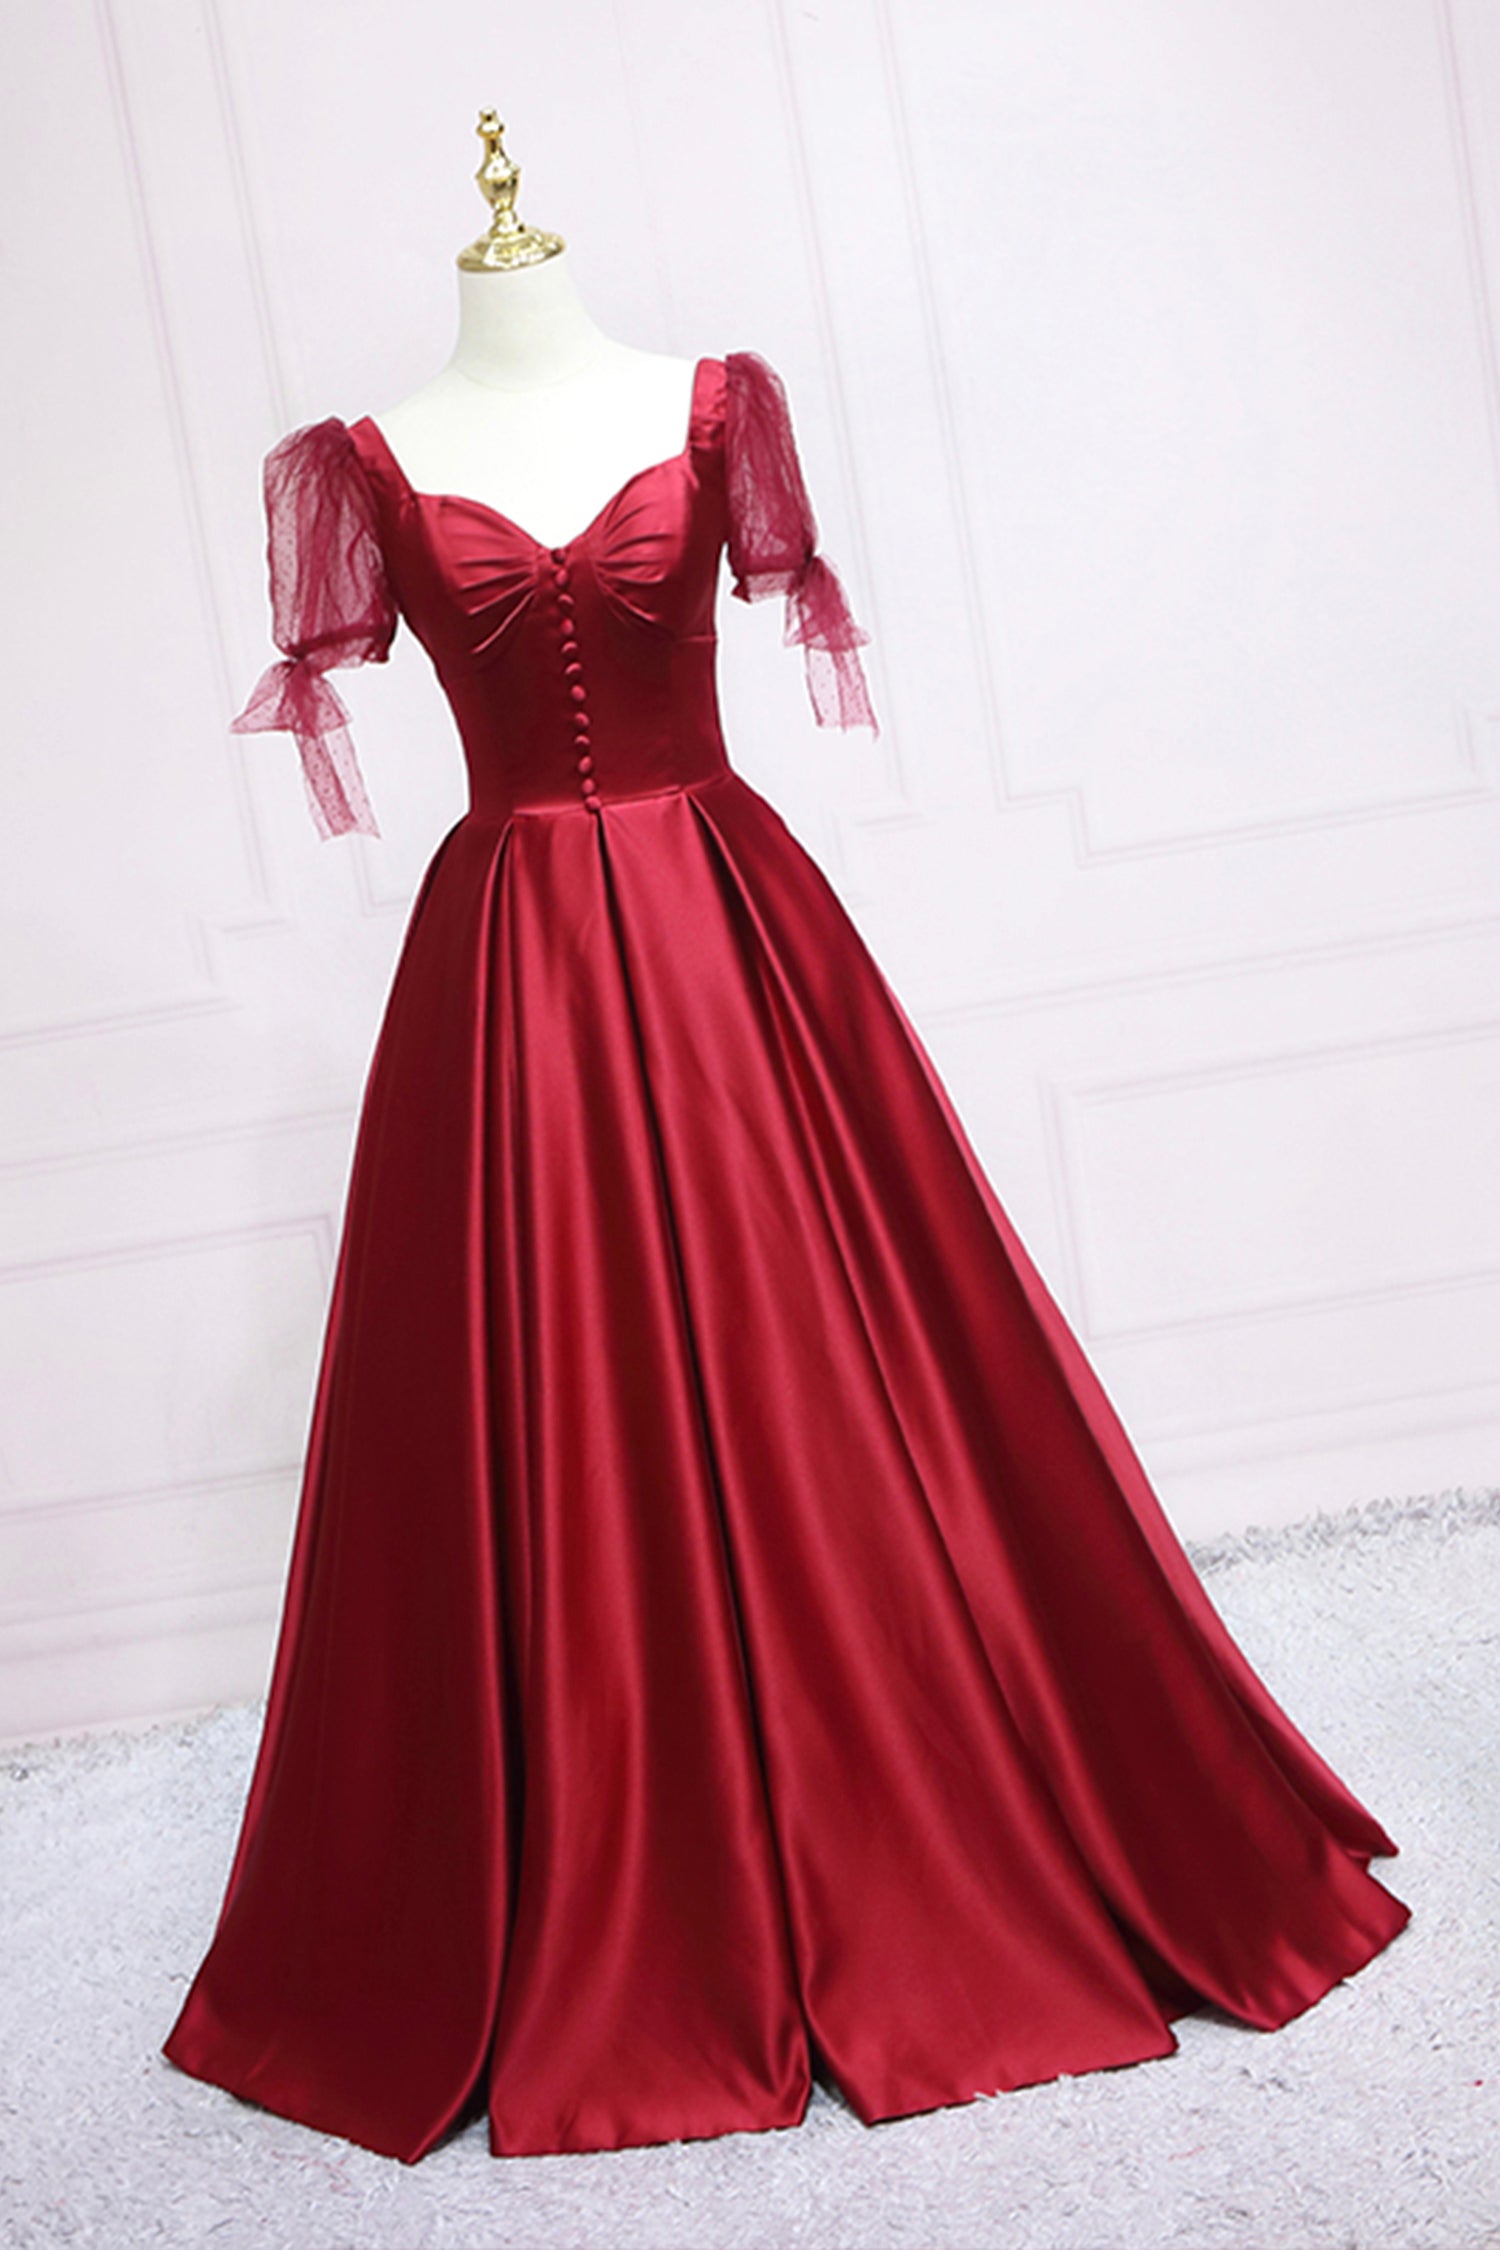 Red Satin Sweetheart Neckline Long Formal Dress, A-Line Evening Graduation Dress